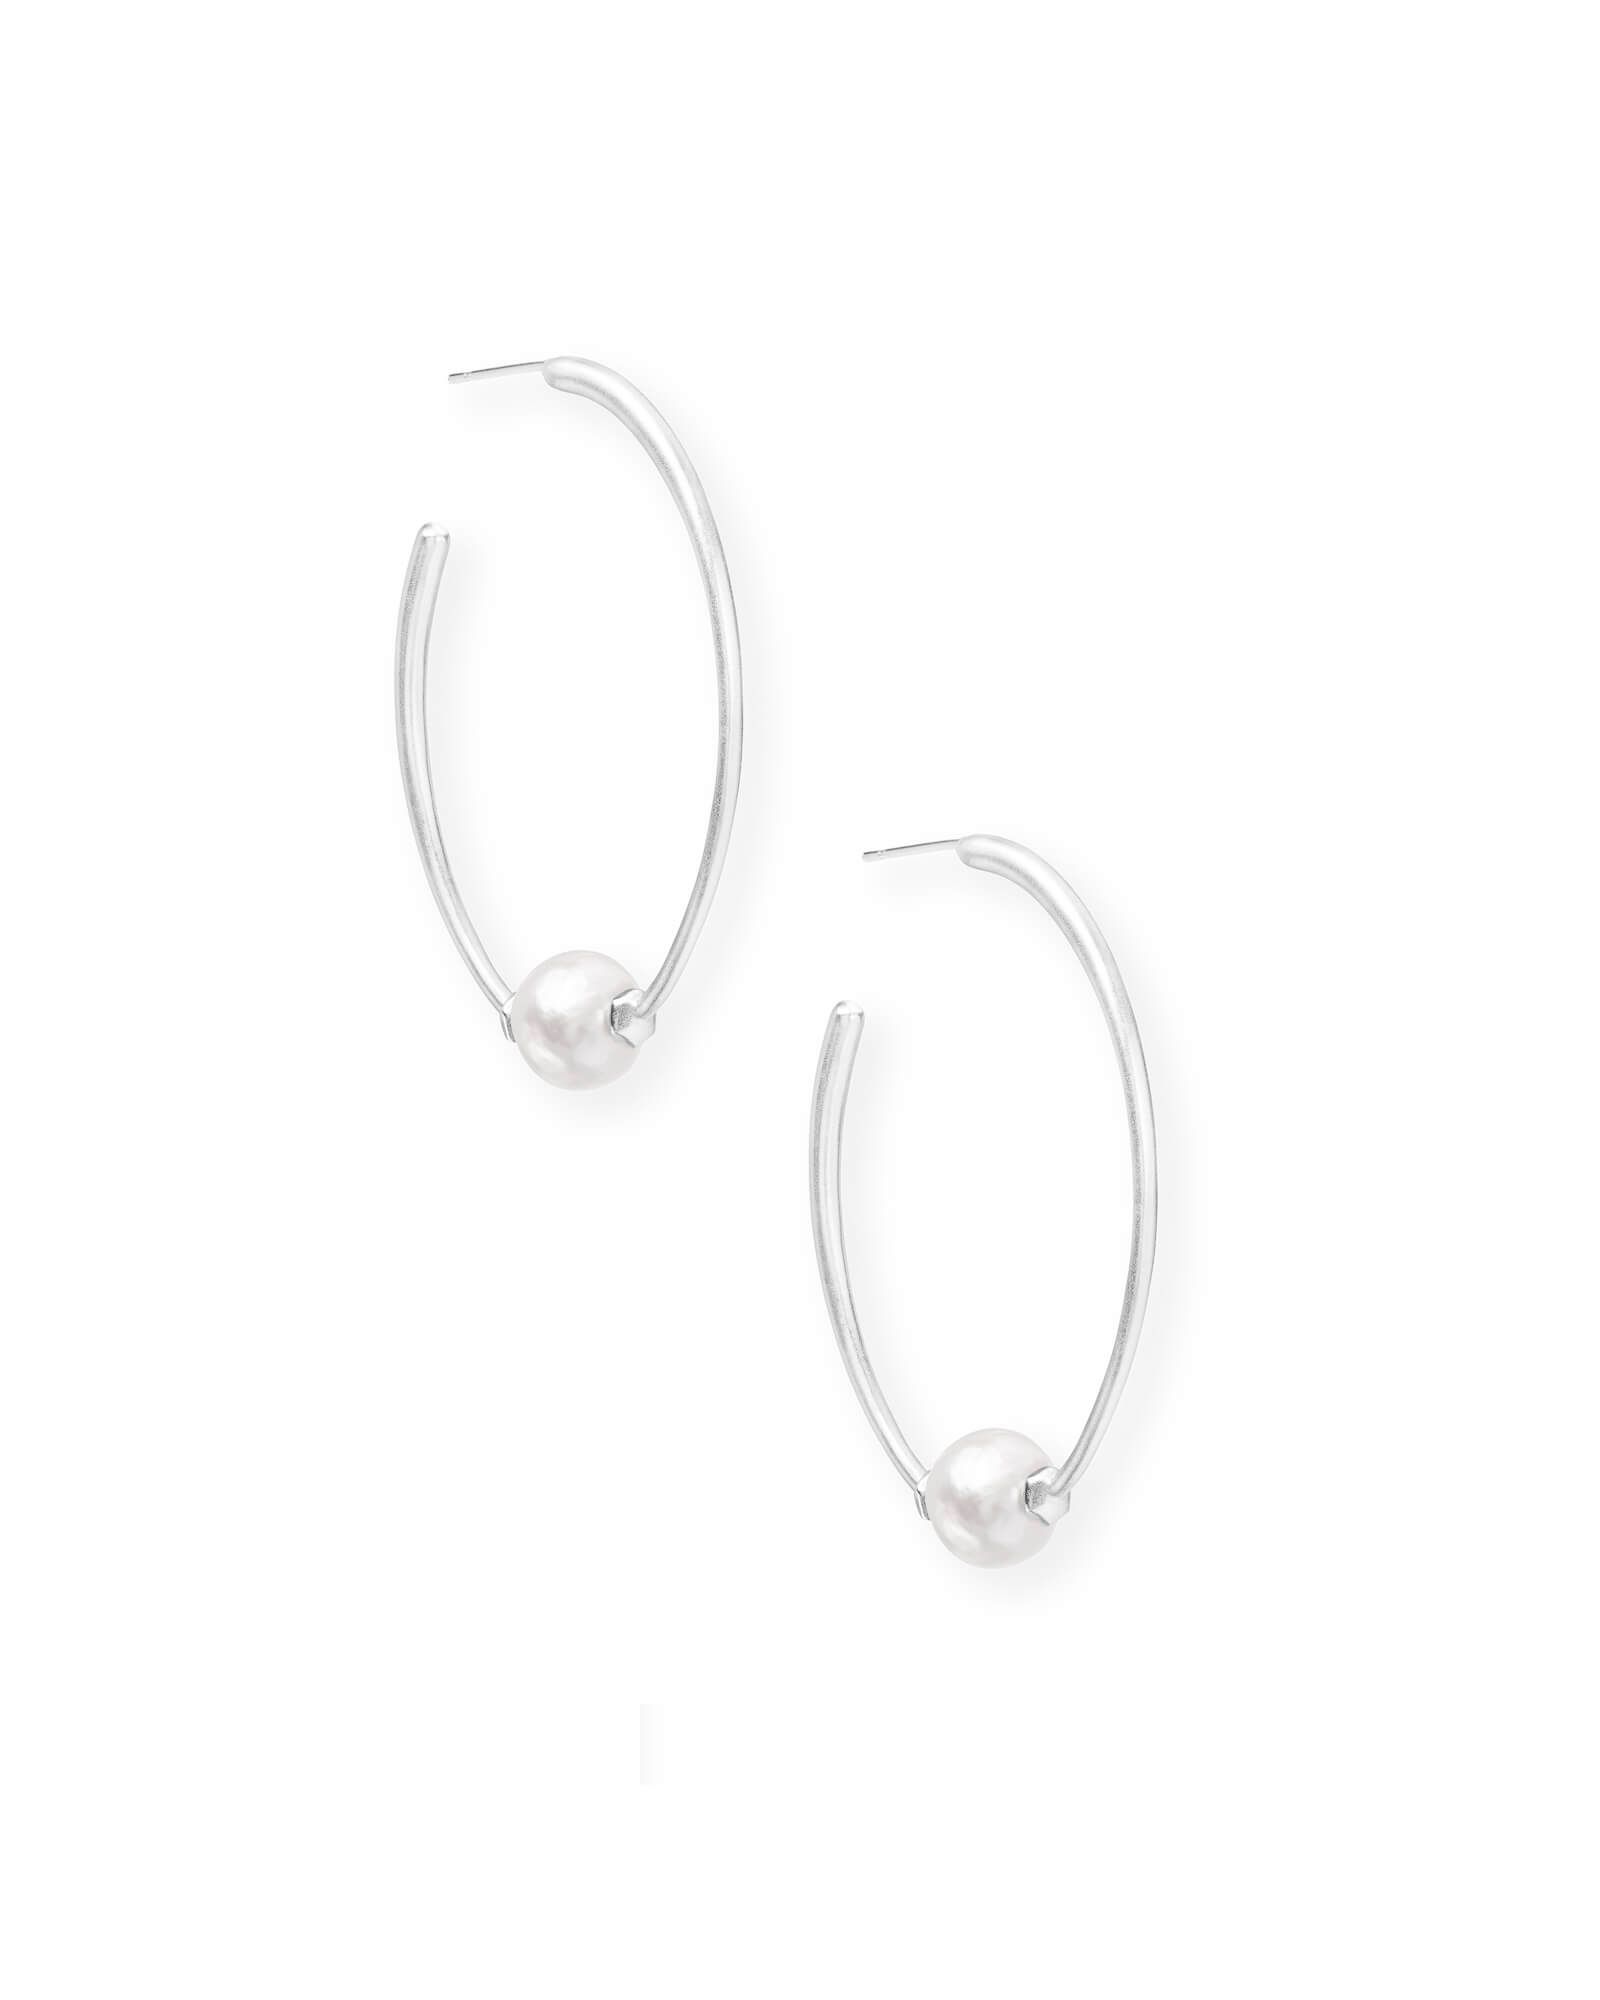 Regina Bright Silver Hoop Earrings in Pearl | Kendra Scott | Kendra Scott